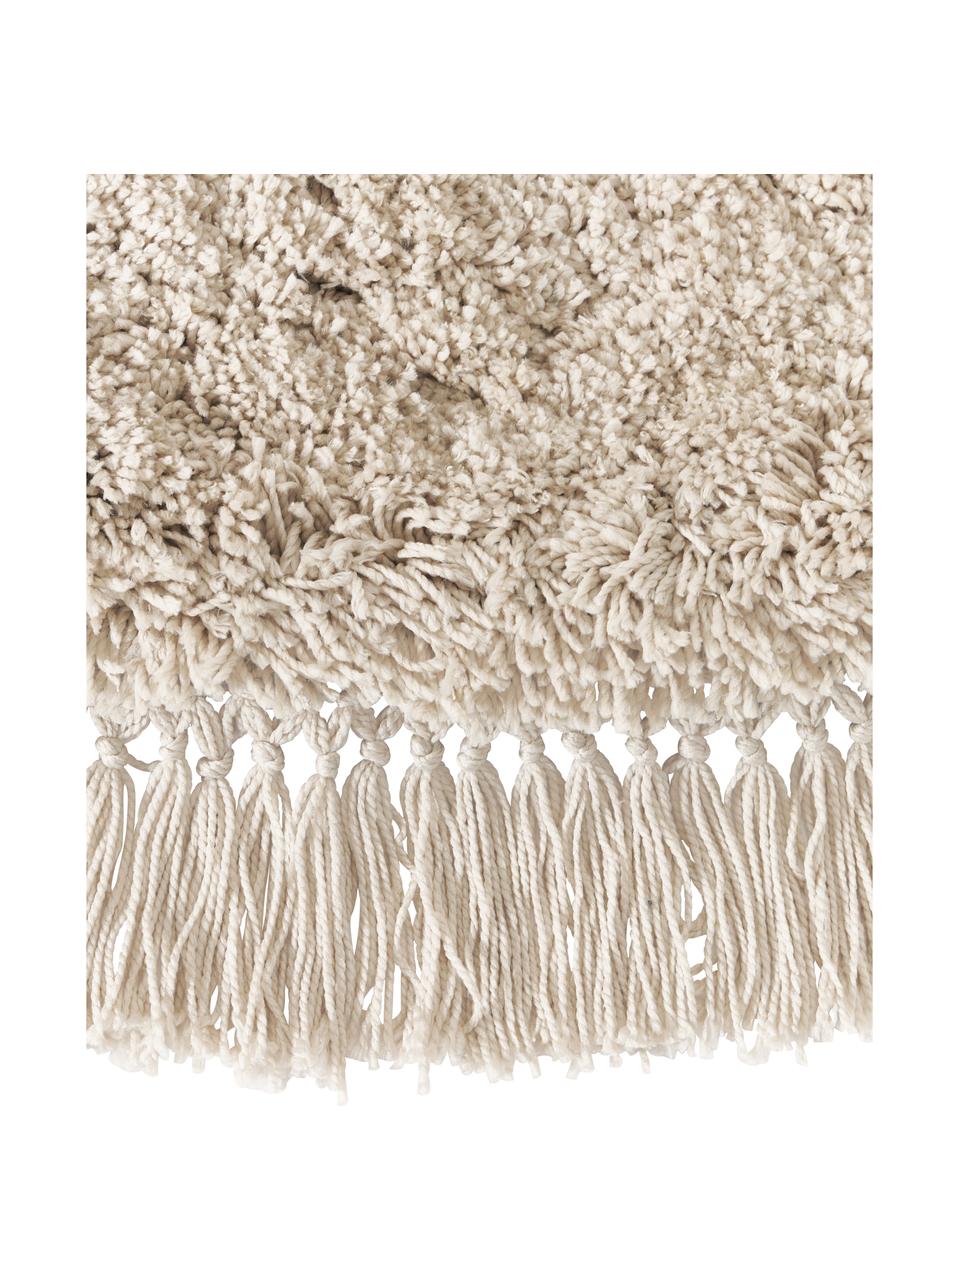 Flauschiger runder Hochflor-Teppich Dreamy mit Fransen, Flor: 100 % Polyester, Beige, Ø 120 cm (Größe S)